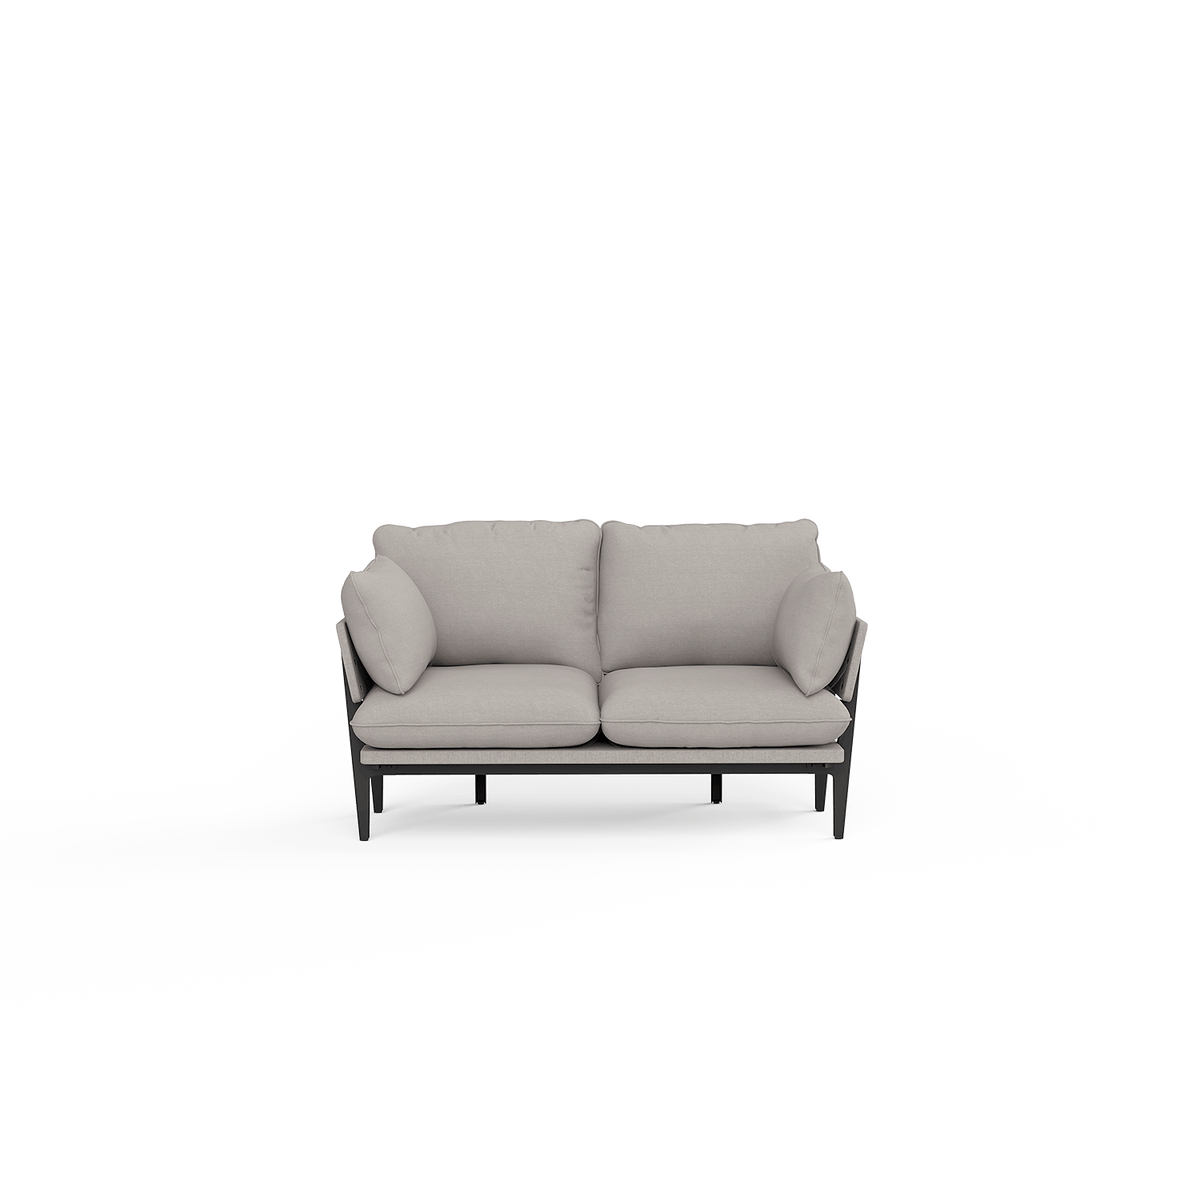 The Floyd Sofa A Modern Built To